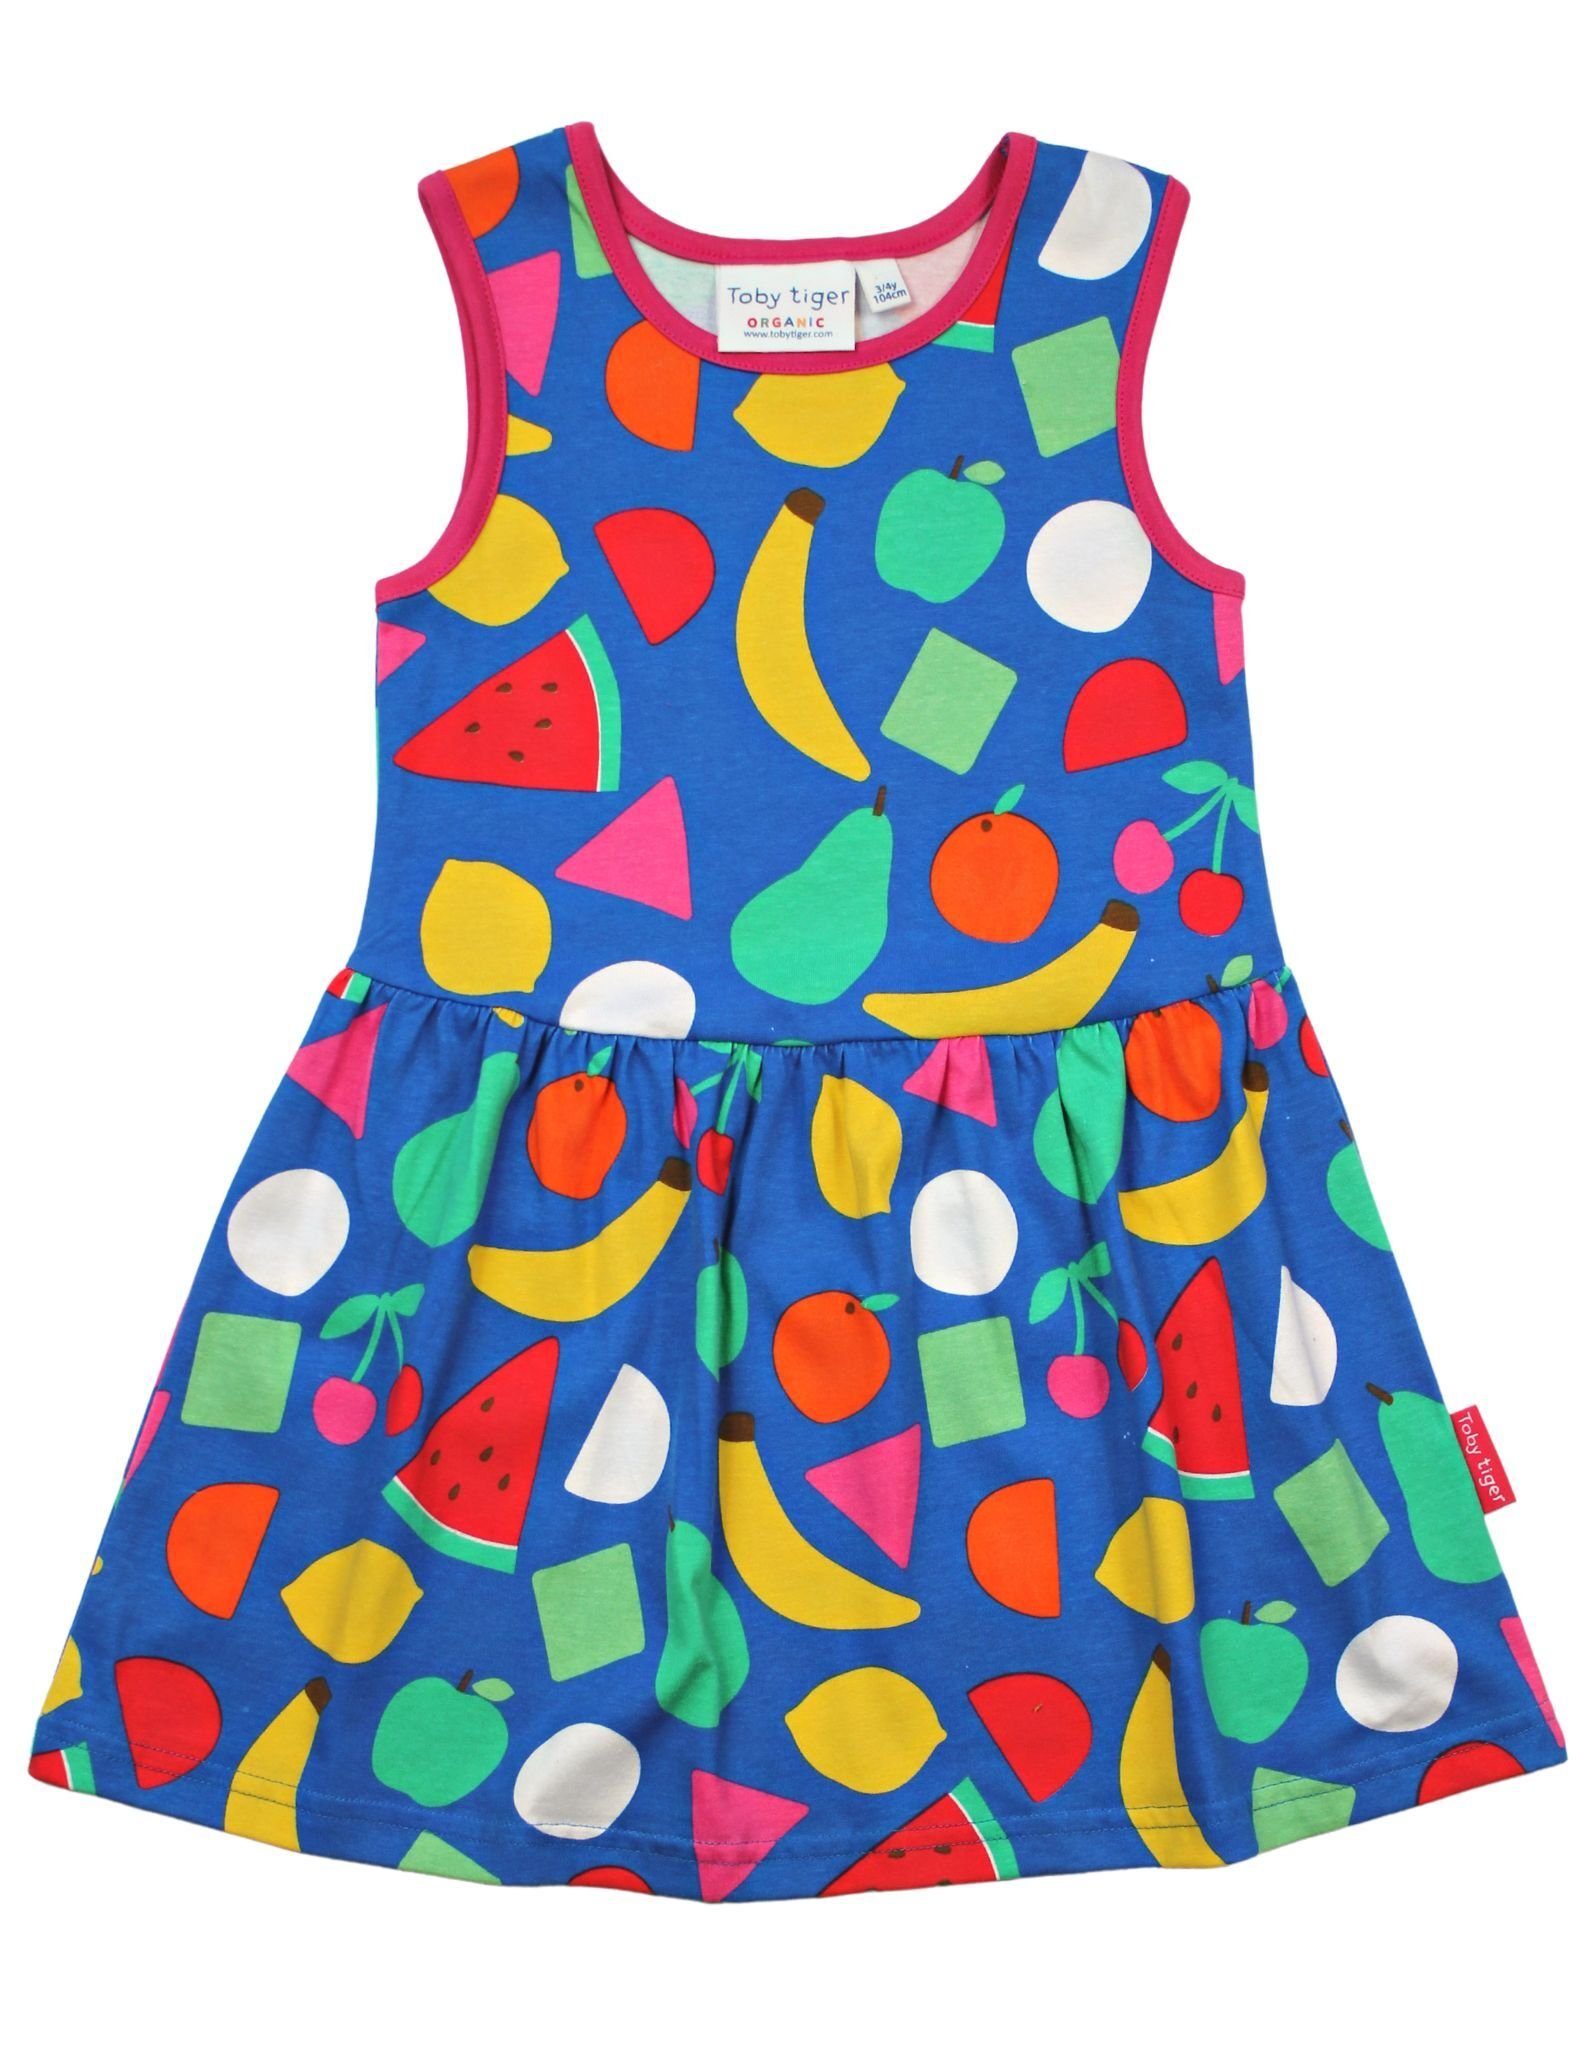 Toby Tiger Shirtkleid Kinder Kleid mit Früchte Print